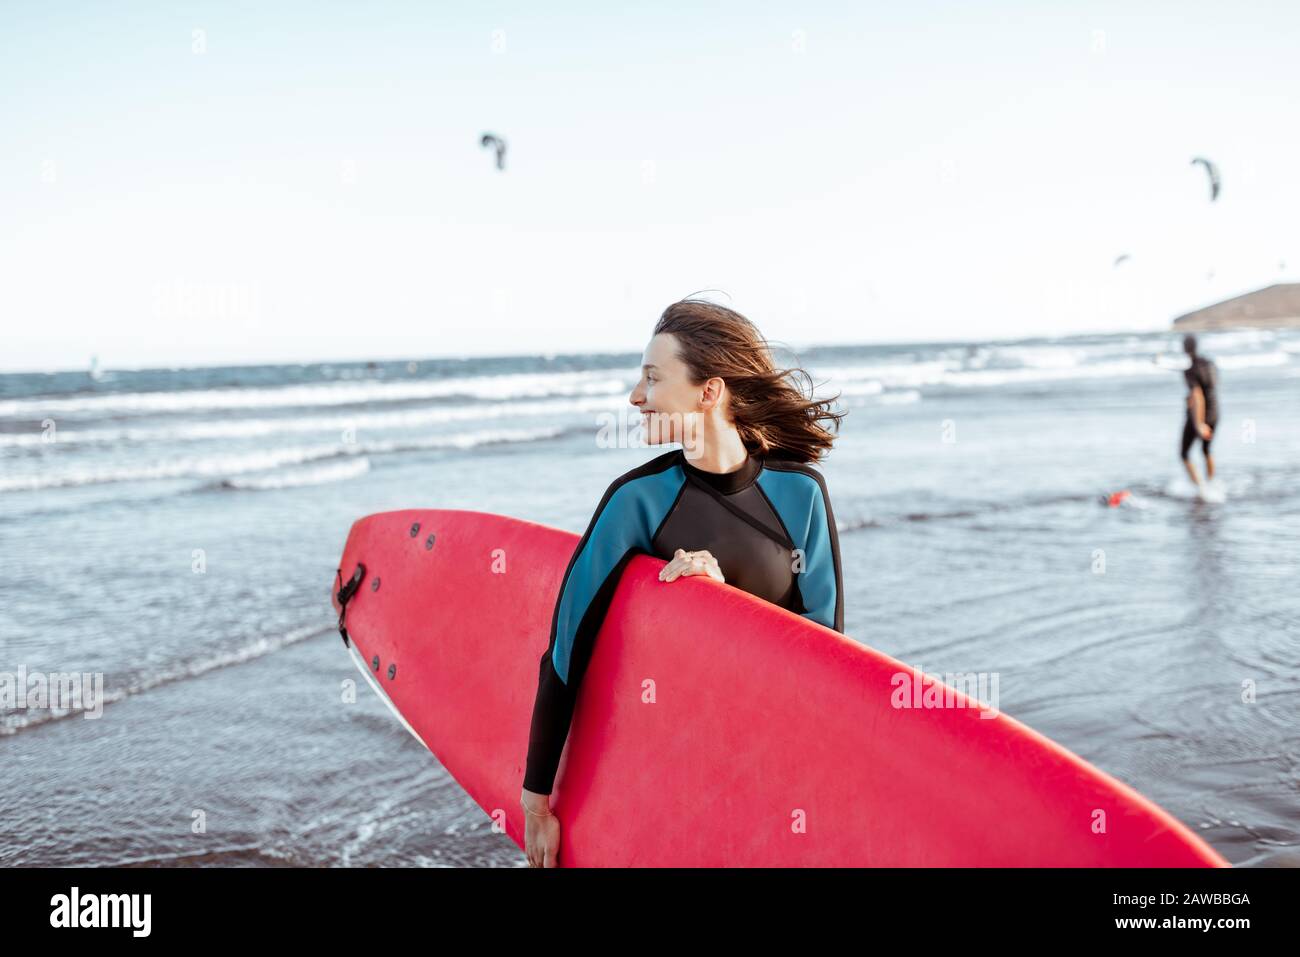 Ritratto di una giovane donna surfista in costume da bagno in piedi con tavola da surf rossa sulla spiaggia. Stile di vita attivo e concetto di surf Foto Stock